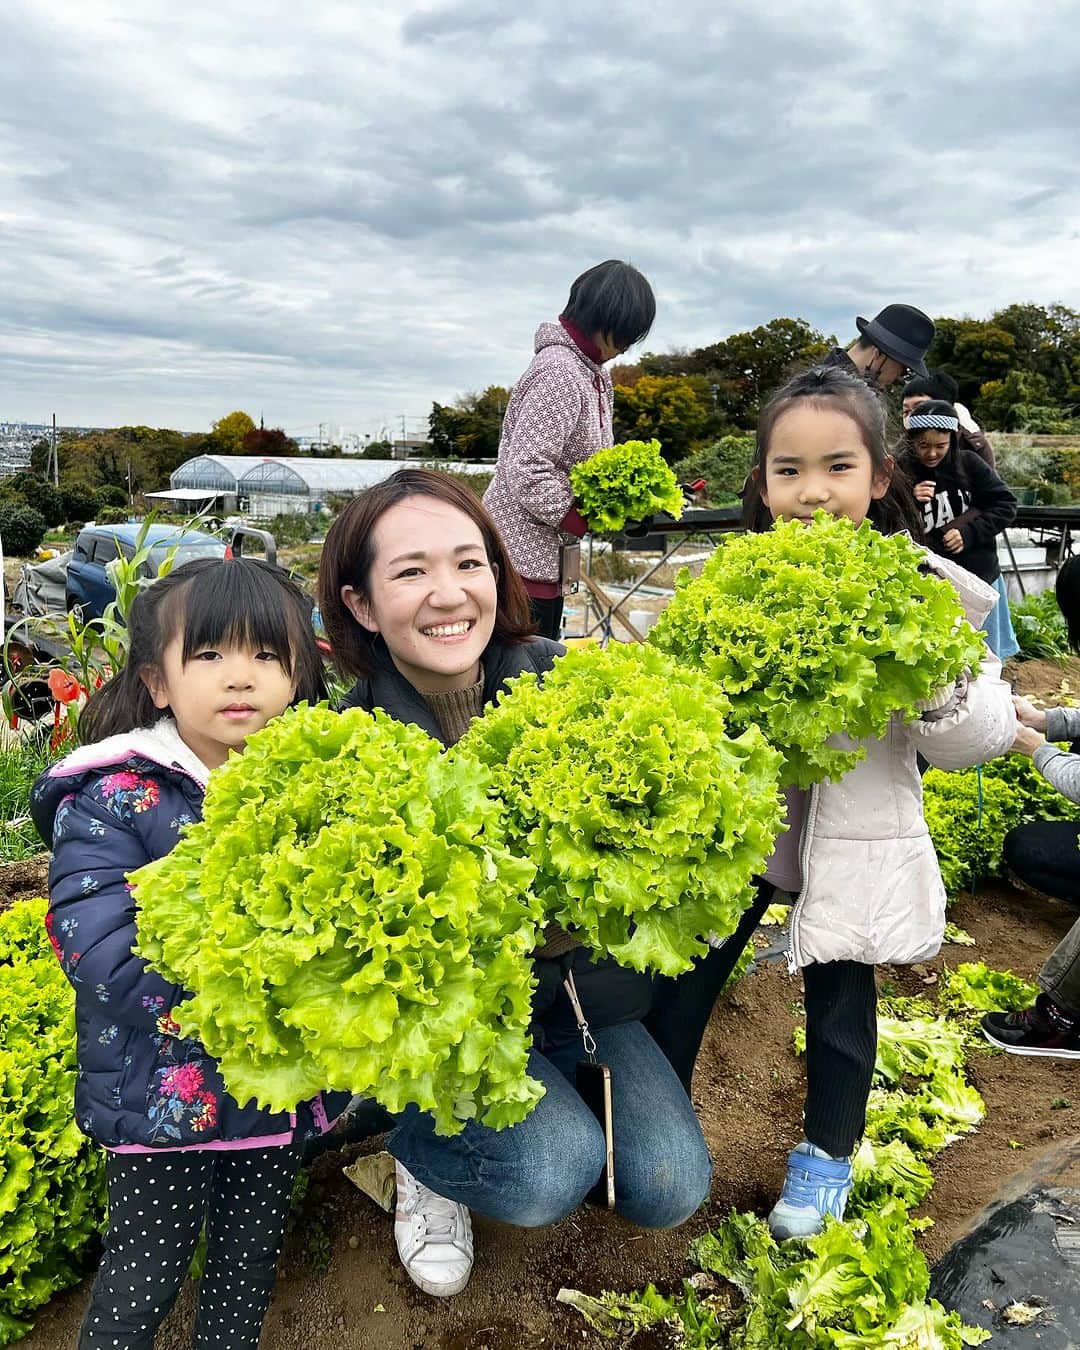 アレルギーナビゲーター 細川真奈 ❤のインスタグラム：「#アレルギーフレンドリーツアー in神奈川 開催いたしました🧑‍🌾✨  " いかす　めぐる　つながる。 be organic. " をテーマにオーガニックのお野菜生産・販売・学びを事業展開されている、 いかす平塚農場 @icas.sustainable.lifestyle の代表取締役 白土さんにご案内いただいた今回のツアー。  なんとも豪華で ⚫︎大根取り放題😳！（未だかつて聞いたことない！） ⚫︎巨大リーフレタス の収穫体験から、生産の知識まで… 本当に貴重な体験をさせていただきました。  乾燥野菜のご紹介・販売もあったのですが 中には胡瓜の乾燥野菜だなんて聞いたことも見たこともないものもあり…私も思わず購入させていただきました❣️  ランチは移動して、 白土さんにご紹介いただいた アッシュ×エム @hxmahiratsuka さんにて 小麦・卵・乳・ナッツ類不使用（それ以外の細やかなアレルゲンにも個別でご対応くださり感謝の気持ちでいっぱいです🥹）のフレンチのフルコースをご用意いただきました🍽️💕  フレンチですよ？！！！ しかもフルコースですよ？！！！  目の前に提供される見た目も華やかで手間暇かけられたメニューの数々に思わず主催者であることを忘れてしまいかけてしまう程の素晴らしさでした🥹💕 また、お子様がナイフとフォークを手に取り恐る恐る口にする様子。 食べた直後に目を輝かせている様子を見て思わず胸が熱くなったり…💓  食物アレルギーがあると外食はもちろん、 フレンチのフルコースは家族でも行くことがなかなか難しい中で、今回はもはやクリスマス前倒しのような素敵なアレルギーフレンドリーランチとなりました🌲✨  趣旨をお伝えした際に「むしろ燃えます！」と仰って下さり、ご家族みんなで楽しめるコース料理を…と、 お忙しい中何度もやり取りさせていただいたり、 この日の為にわざわざ米粉パンを何度も研究までしてくださったという幸野シェフ👨‍🍳✨ 感謝してもしきれません😣💕  皆さまのご協力のおかげで 無事、「アレルギーフレンドリーツアー」を開催することができました。  ☑︎オーガニックのお野菜の生産背景 ☑︎オーガニック且つ、採れたて新鮮なお野菜苦手なお子様ですら食べられちゃう不思議 ☑︎こんなに素晴らしい対応、美味しさ優しさのレストランがあるということ ☑︎アレルギーっ子の仲間が実は沢山いること そんな事が少しでも胸に留まると、何か少しでも勇気や前向きな力になりましたら幸いです＾＾  さて。 7月から全国5都市で開催してきたツアーも今月で最終回。  アレルギーフレンドリーオンラインツアー🧑‍🌾✨ 日時：11/30（木）20:00〜21:00  ゲスト講師：いかす農場 白土代表 @icas.sustainable.lifestyle   詳細・お申込みはコチラから ↓ https://r0don.hp.peraichi.com/  参加費：無料  オーガニック野菜の生産に興味のある方、 アレルギーに興味のある方、 是非お申込みお待ちしております🙋‍♀️📩  #アレルギーフレンドリーツアー #アレルギーフレンドリーオンラインツアー #いかす平塚農場 #アッシュエム #親子体験 #親子体験イベント #内閣府関係人口創出事業 #農体験 #収穫体験 #卵アレルギー #乳アレルギー #小麦アレルギー #ナッツアレルギー #食物アレルギー #アレルギー #大人の食物アレルギー #アレルギーナビゲーター #食物アレルギー_イベント #食物アレルギー_外食 #美味しいって幸せ」